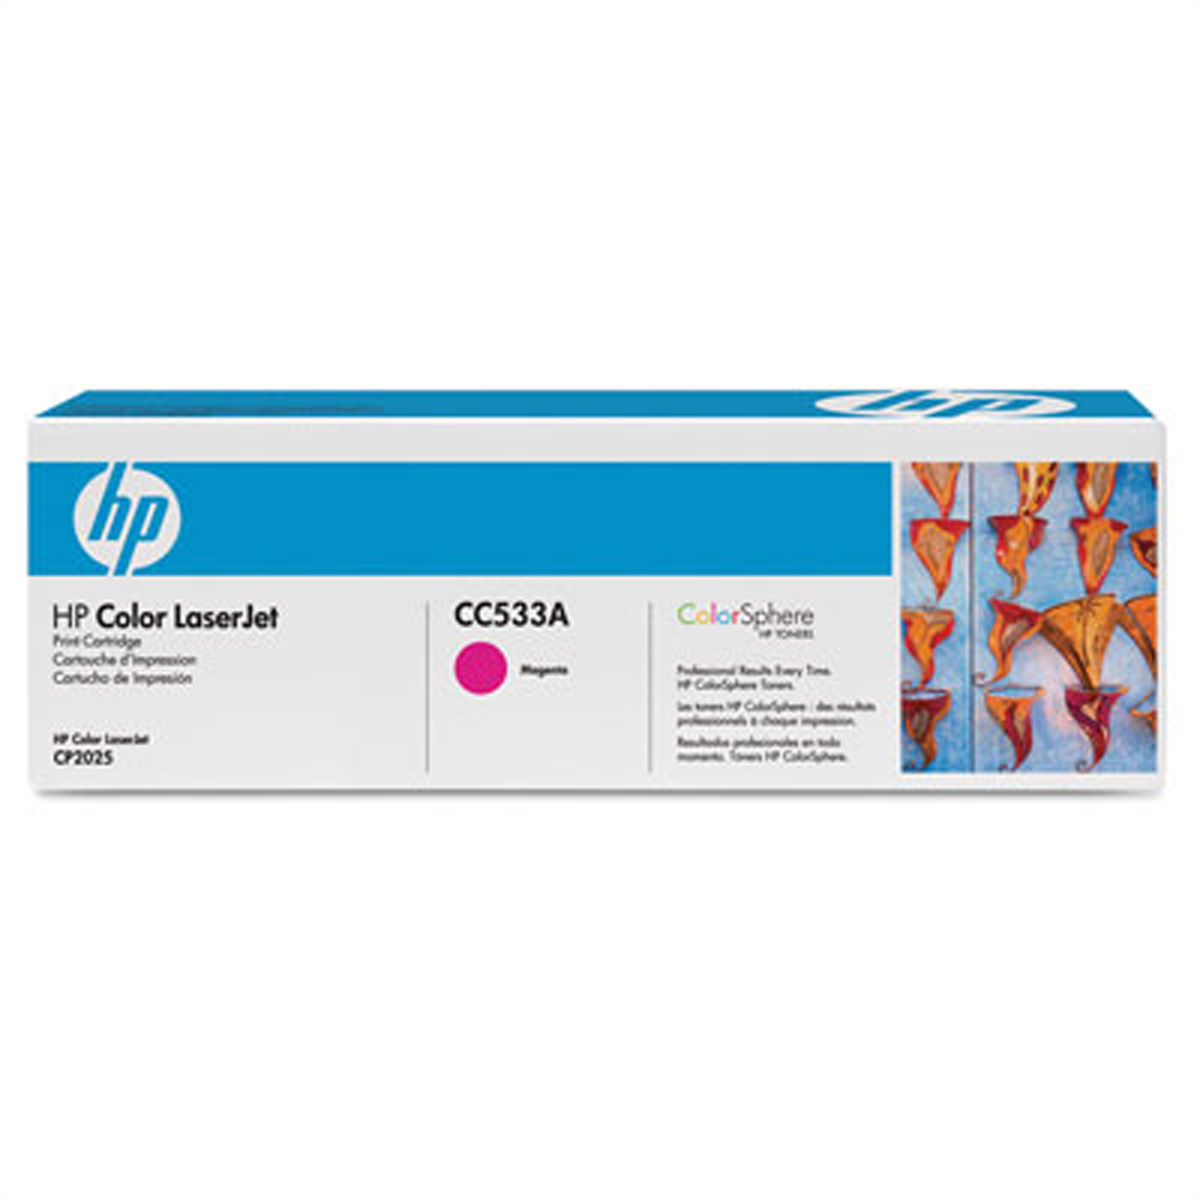 CC533A, HP Color LaserJet Druckkassette magenta, ca. 2.800 Seiten für HP LaserJe